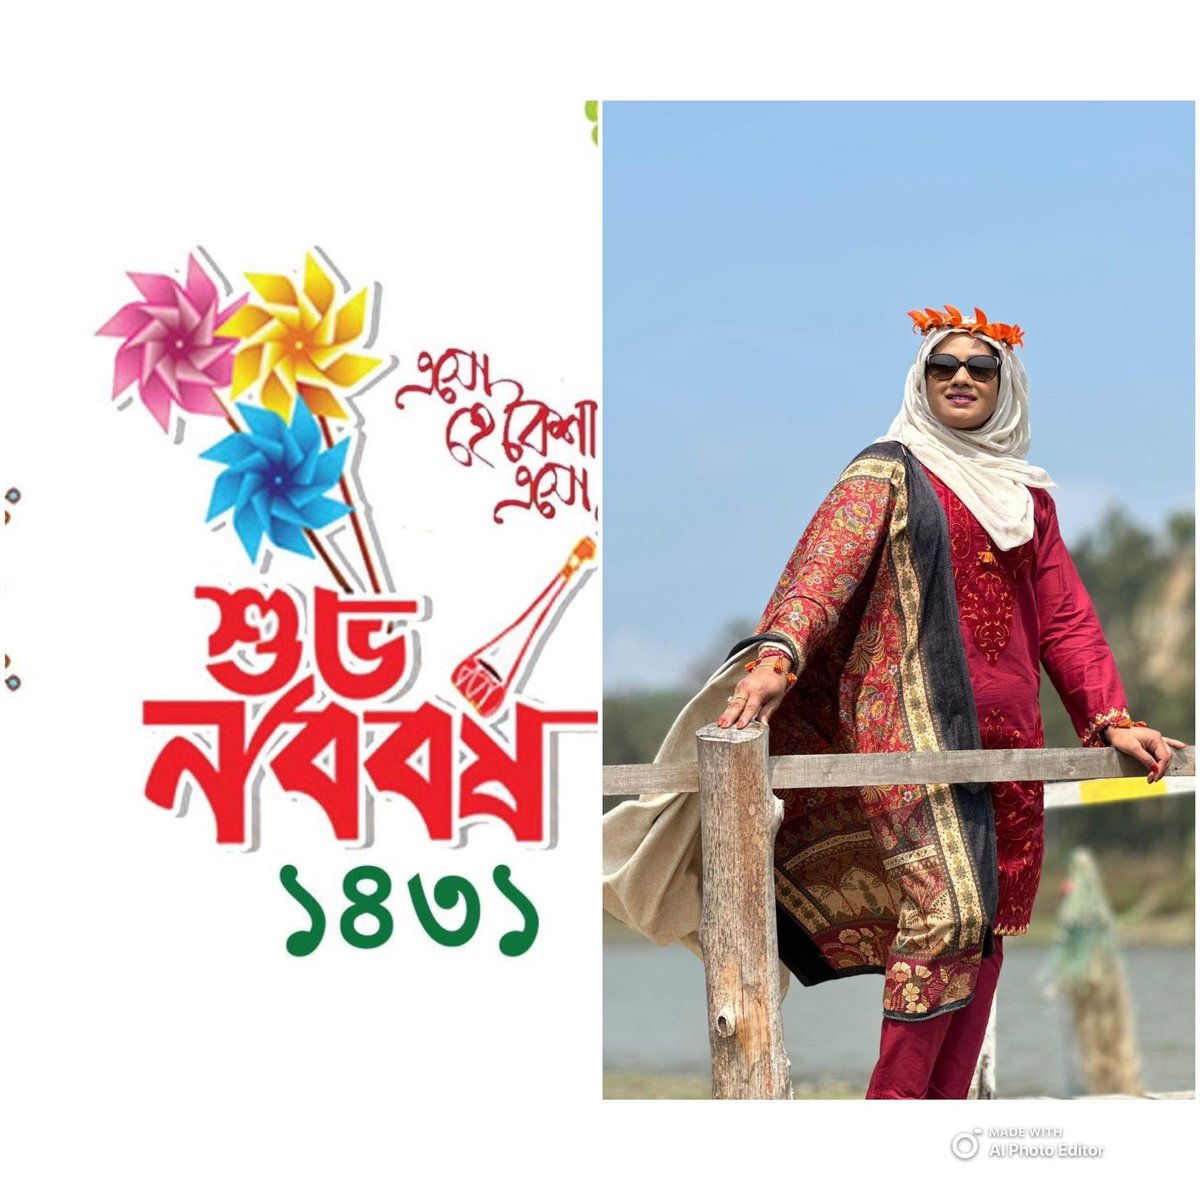 #PohelaBoishak #BengaliNewYear1431 to those celebrating have a lovely day